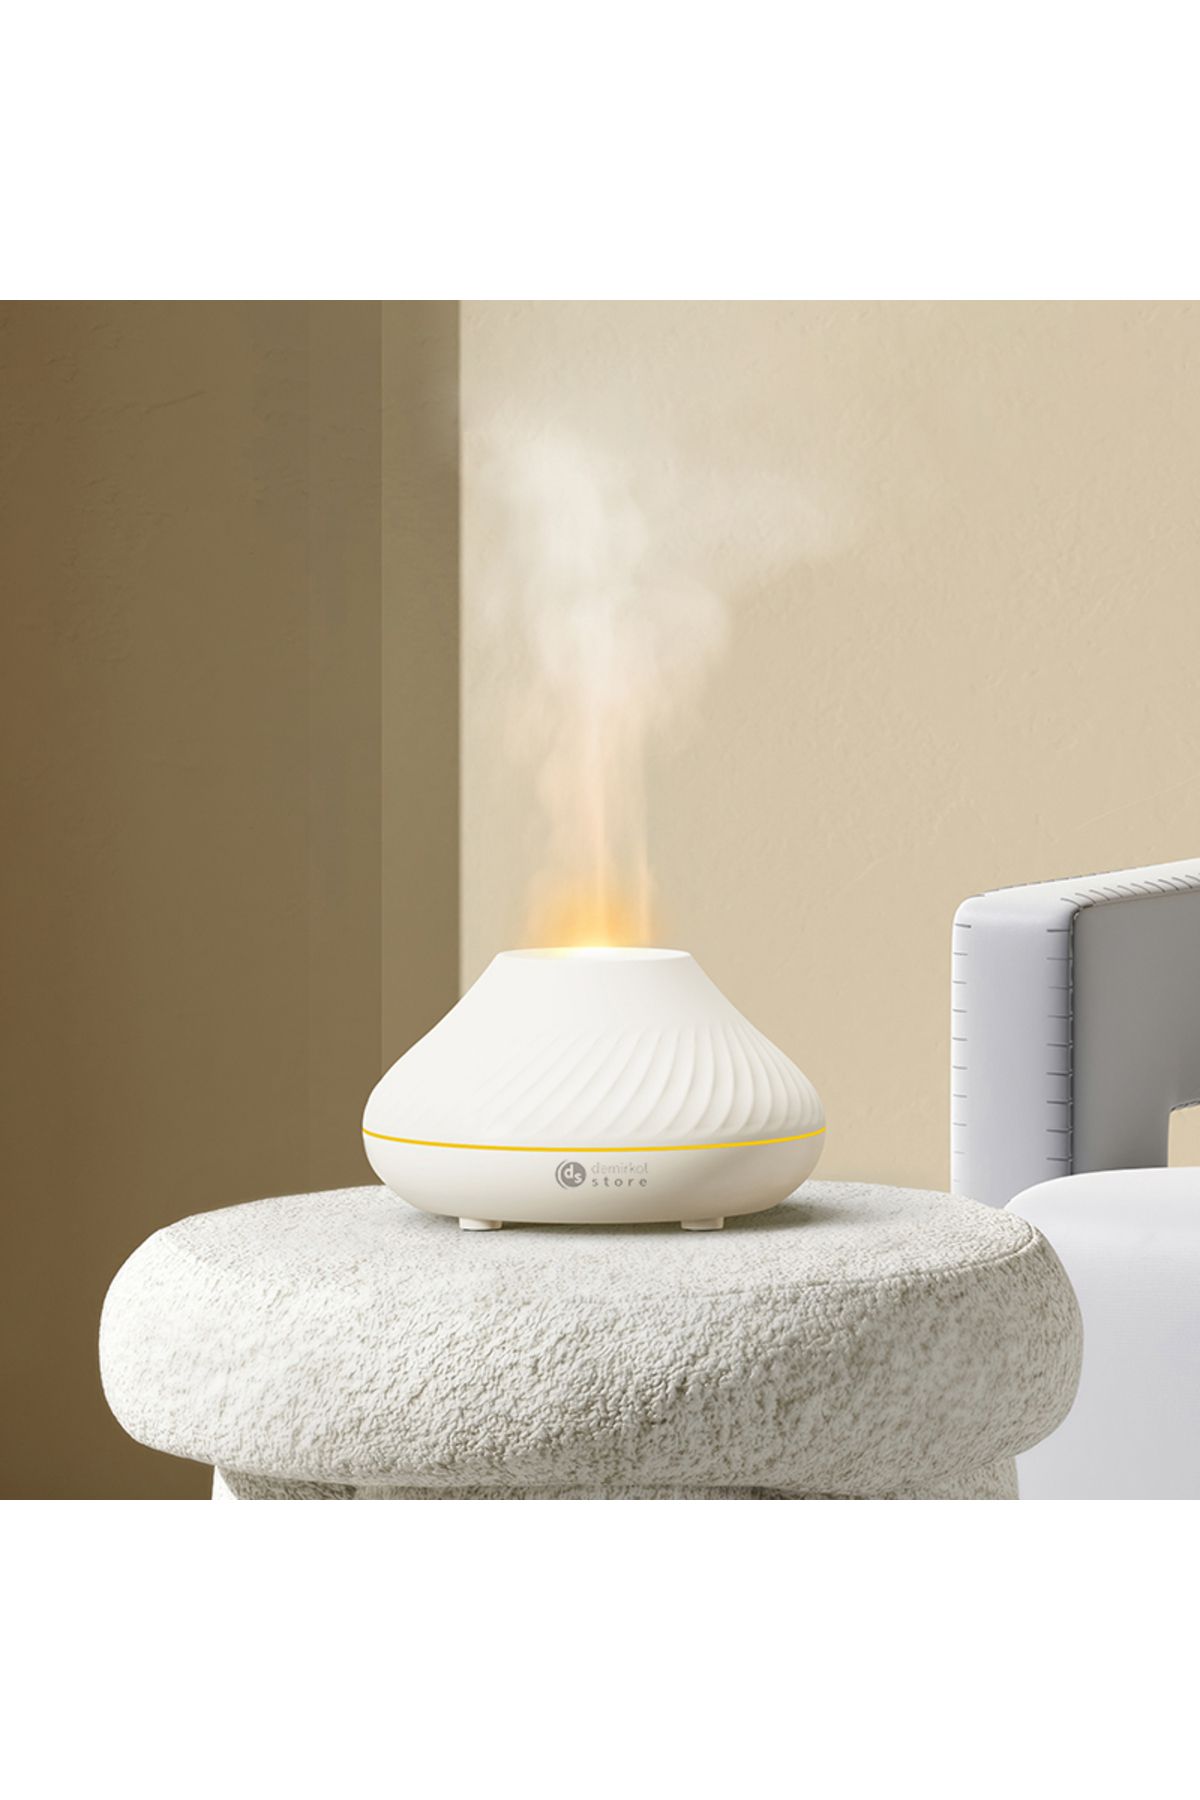 Demirkol Store Alevli Aroma Difüzörü 7 Renk Işık 130 ml Aromaterapi Ofis, Yoga,  Yatak Odası için (Beyaz)